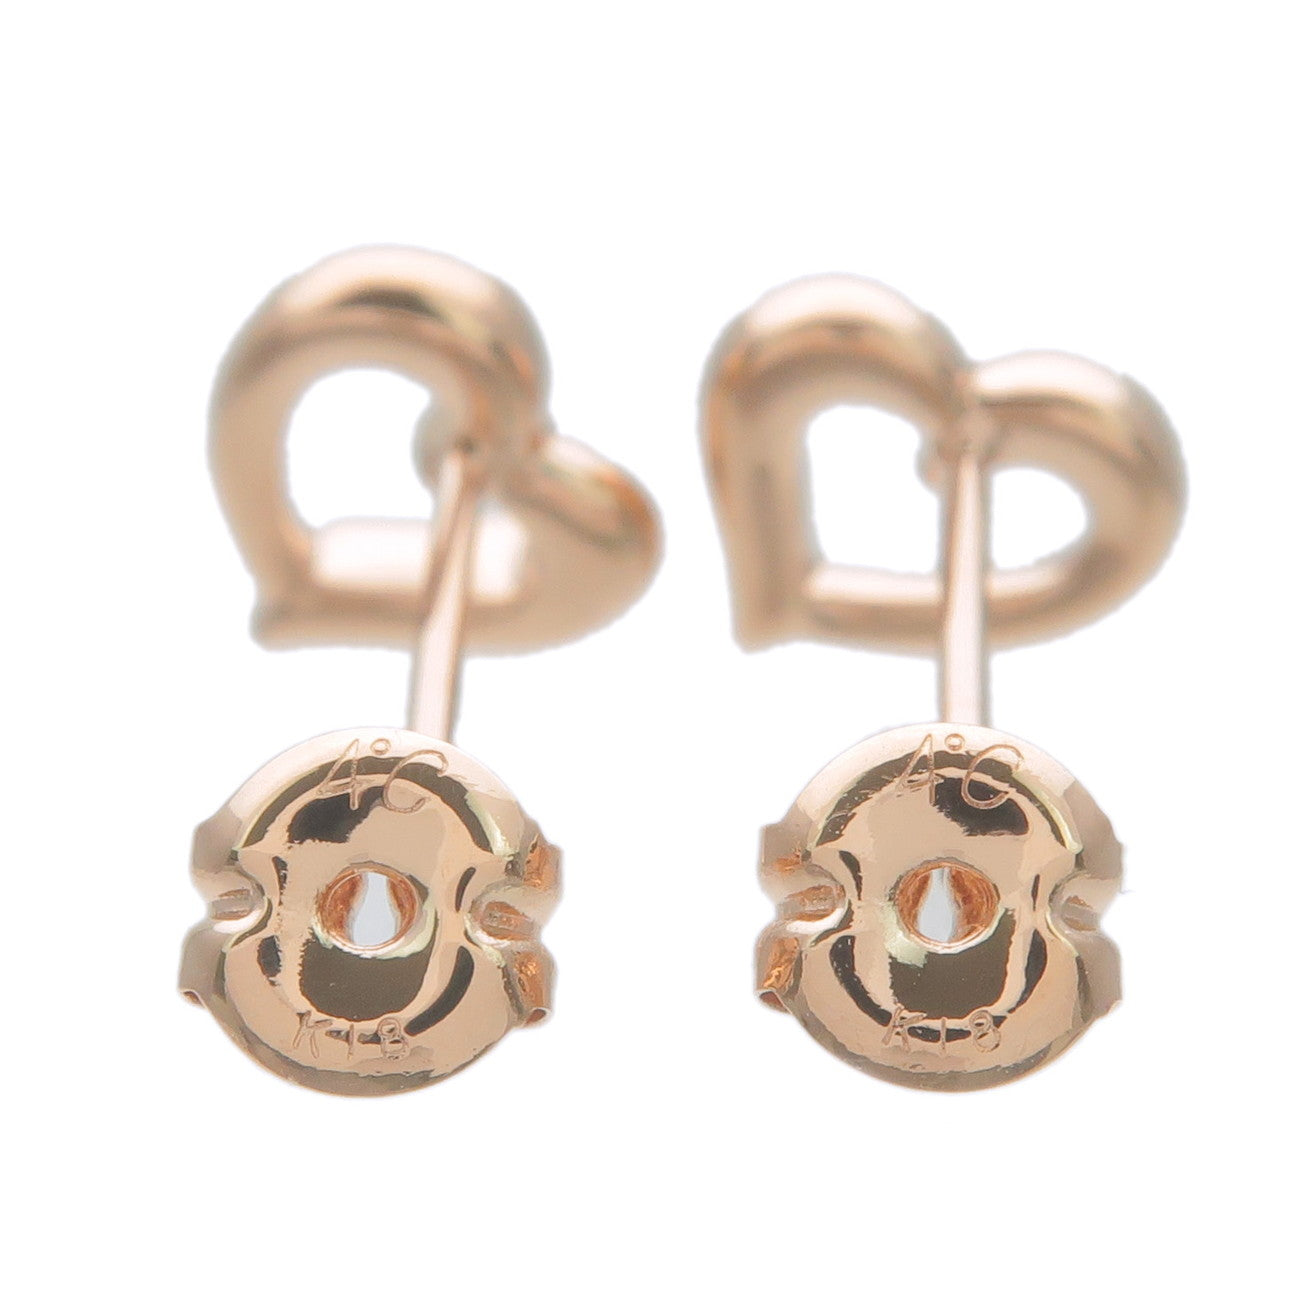 4C Heart Charm 5P Diamond Earrings K18PG 750 Rose Gold